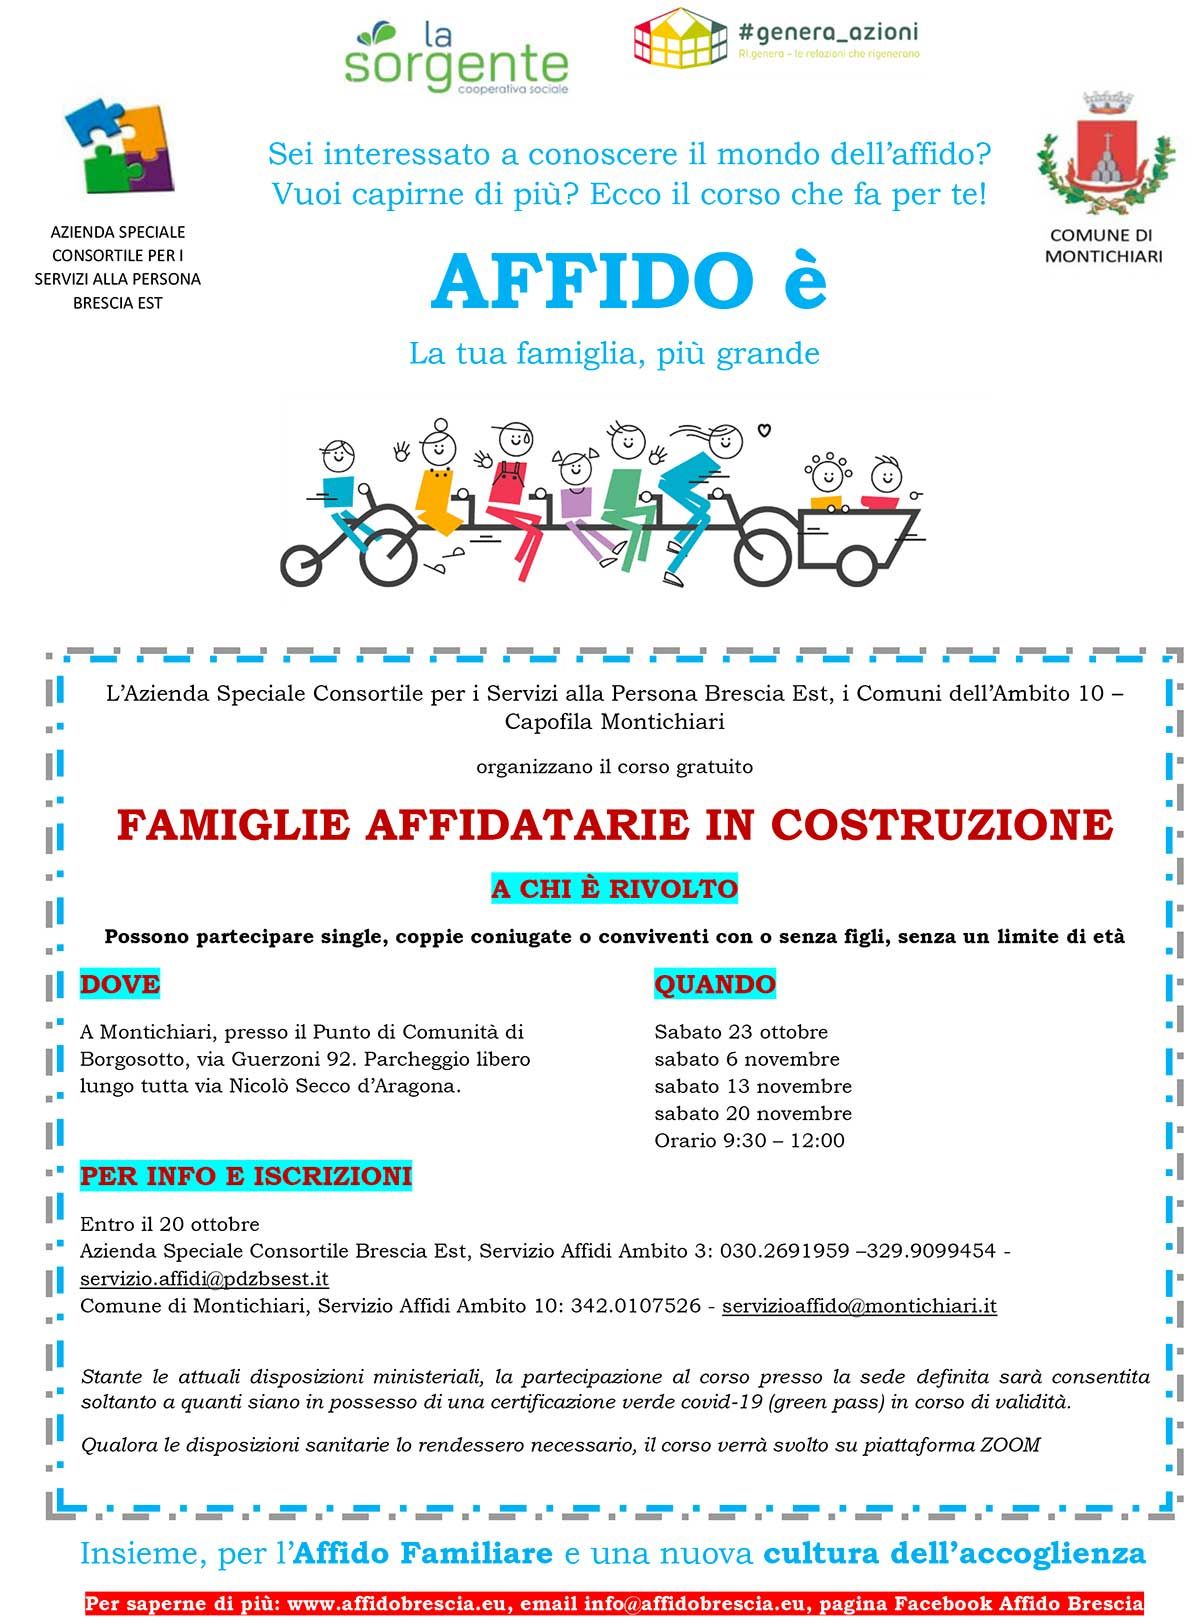 Famiglie-affidatarie-costruzione-Affido-formazione-2021